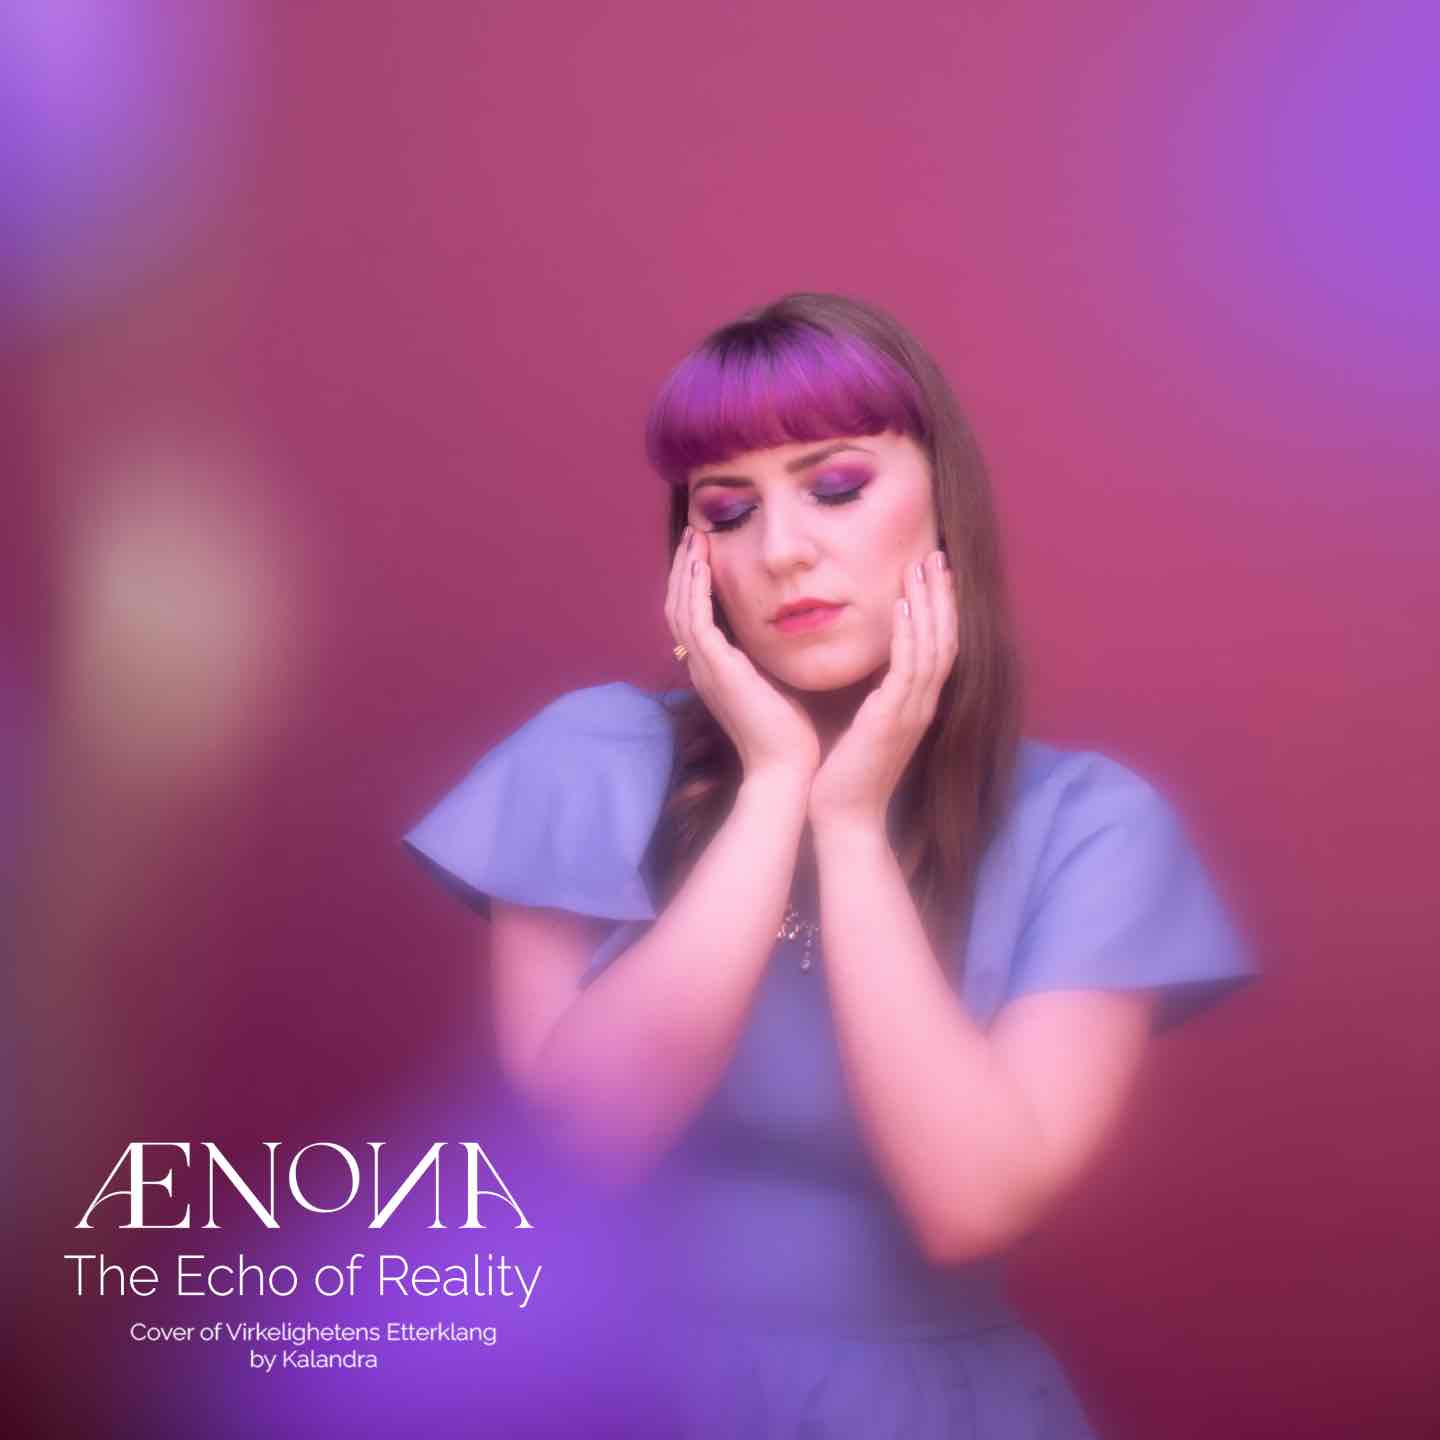 AENONA – The Echo of Reality